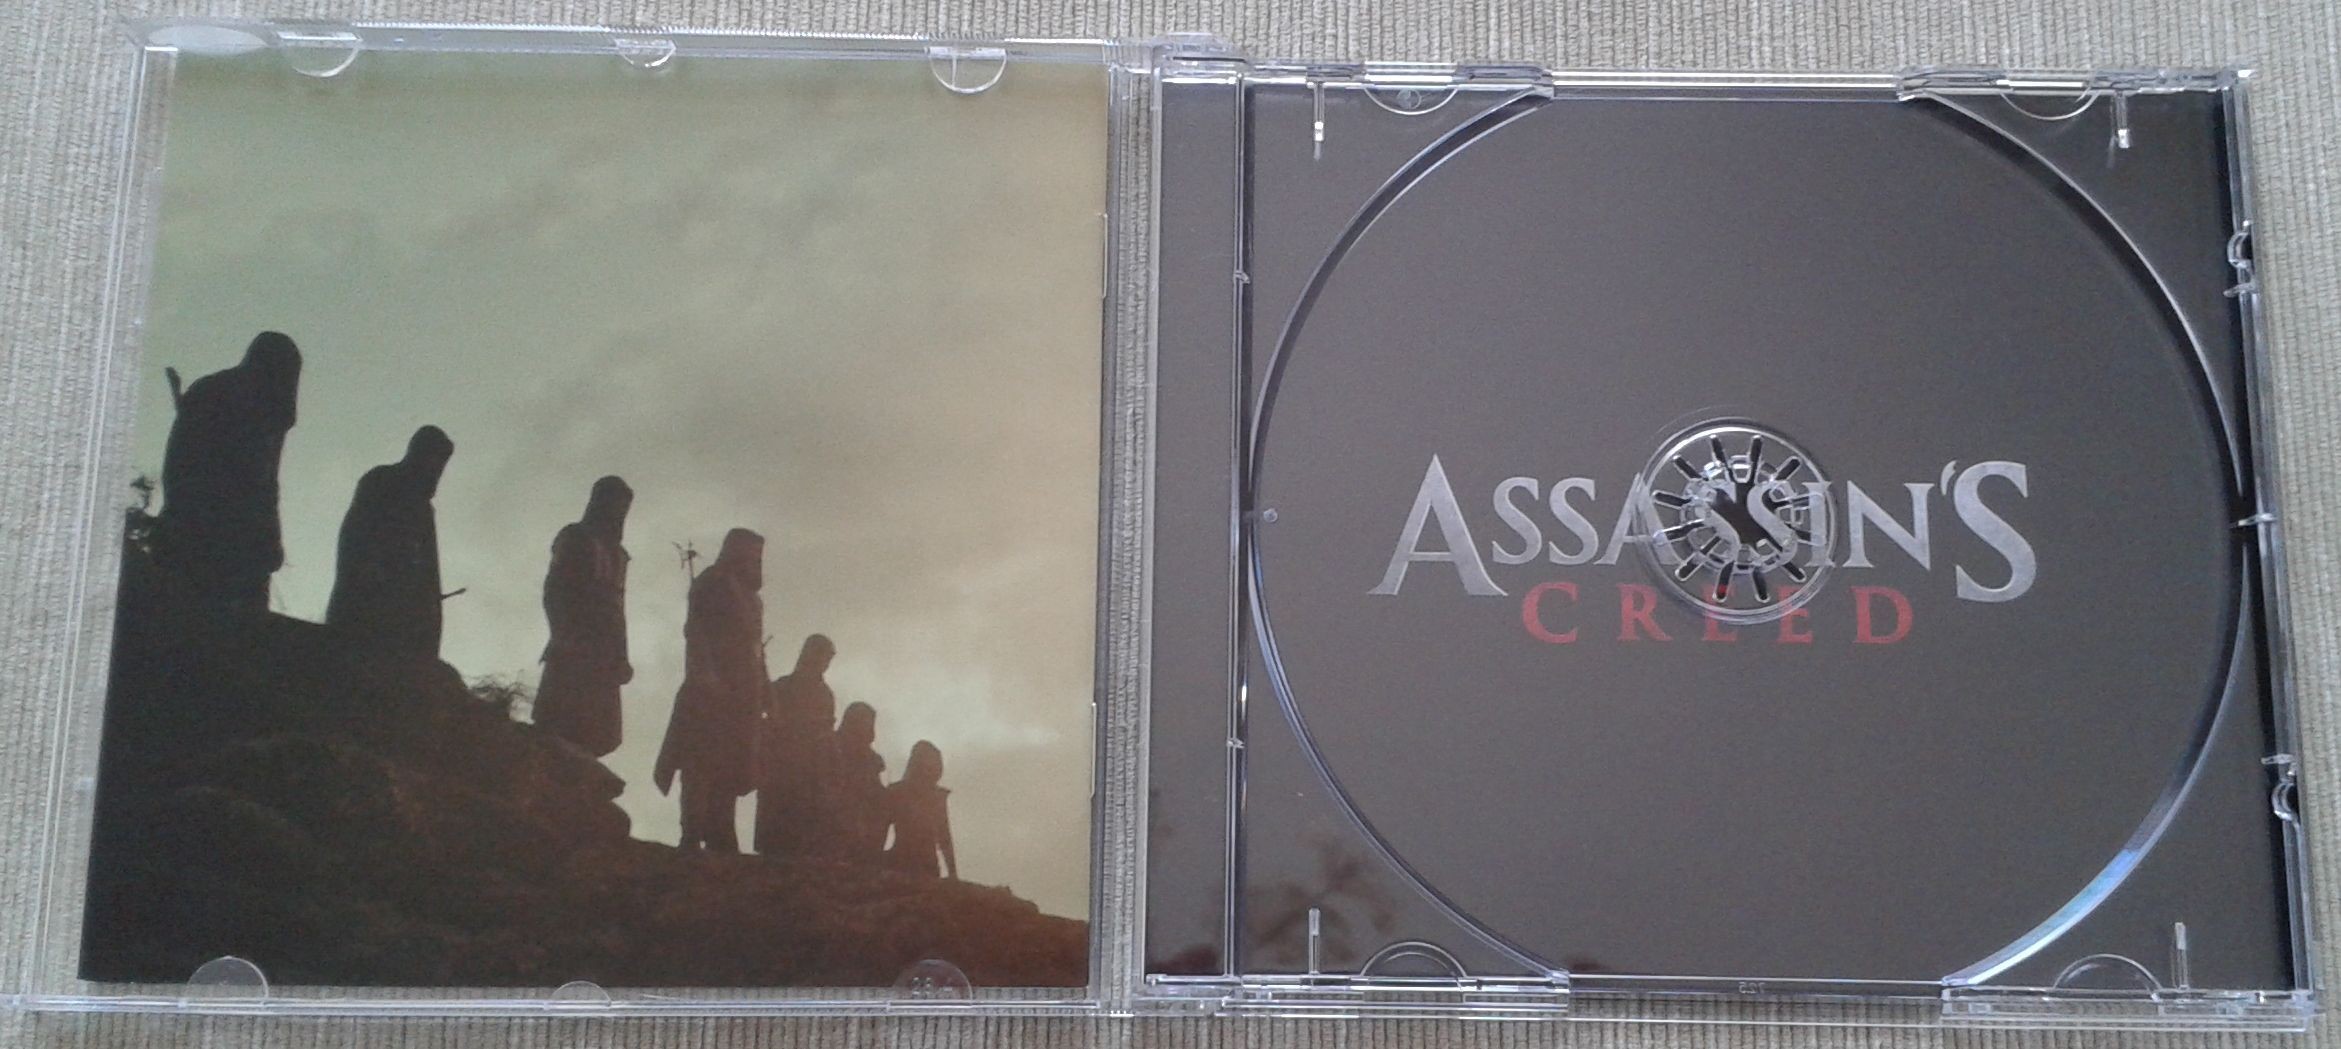 4. Assassins Creed środek bez płyty.jpg